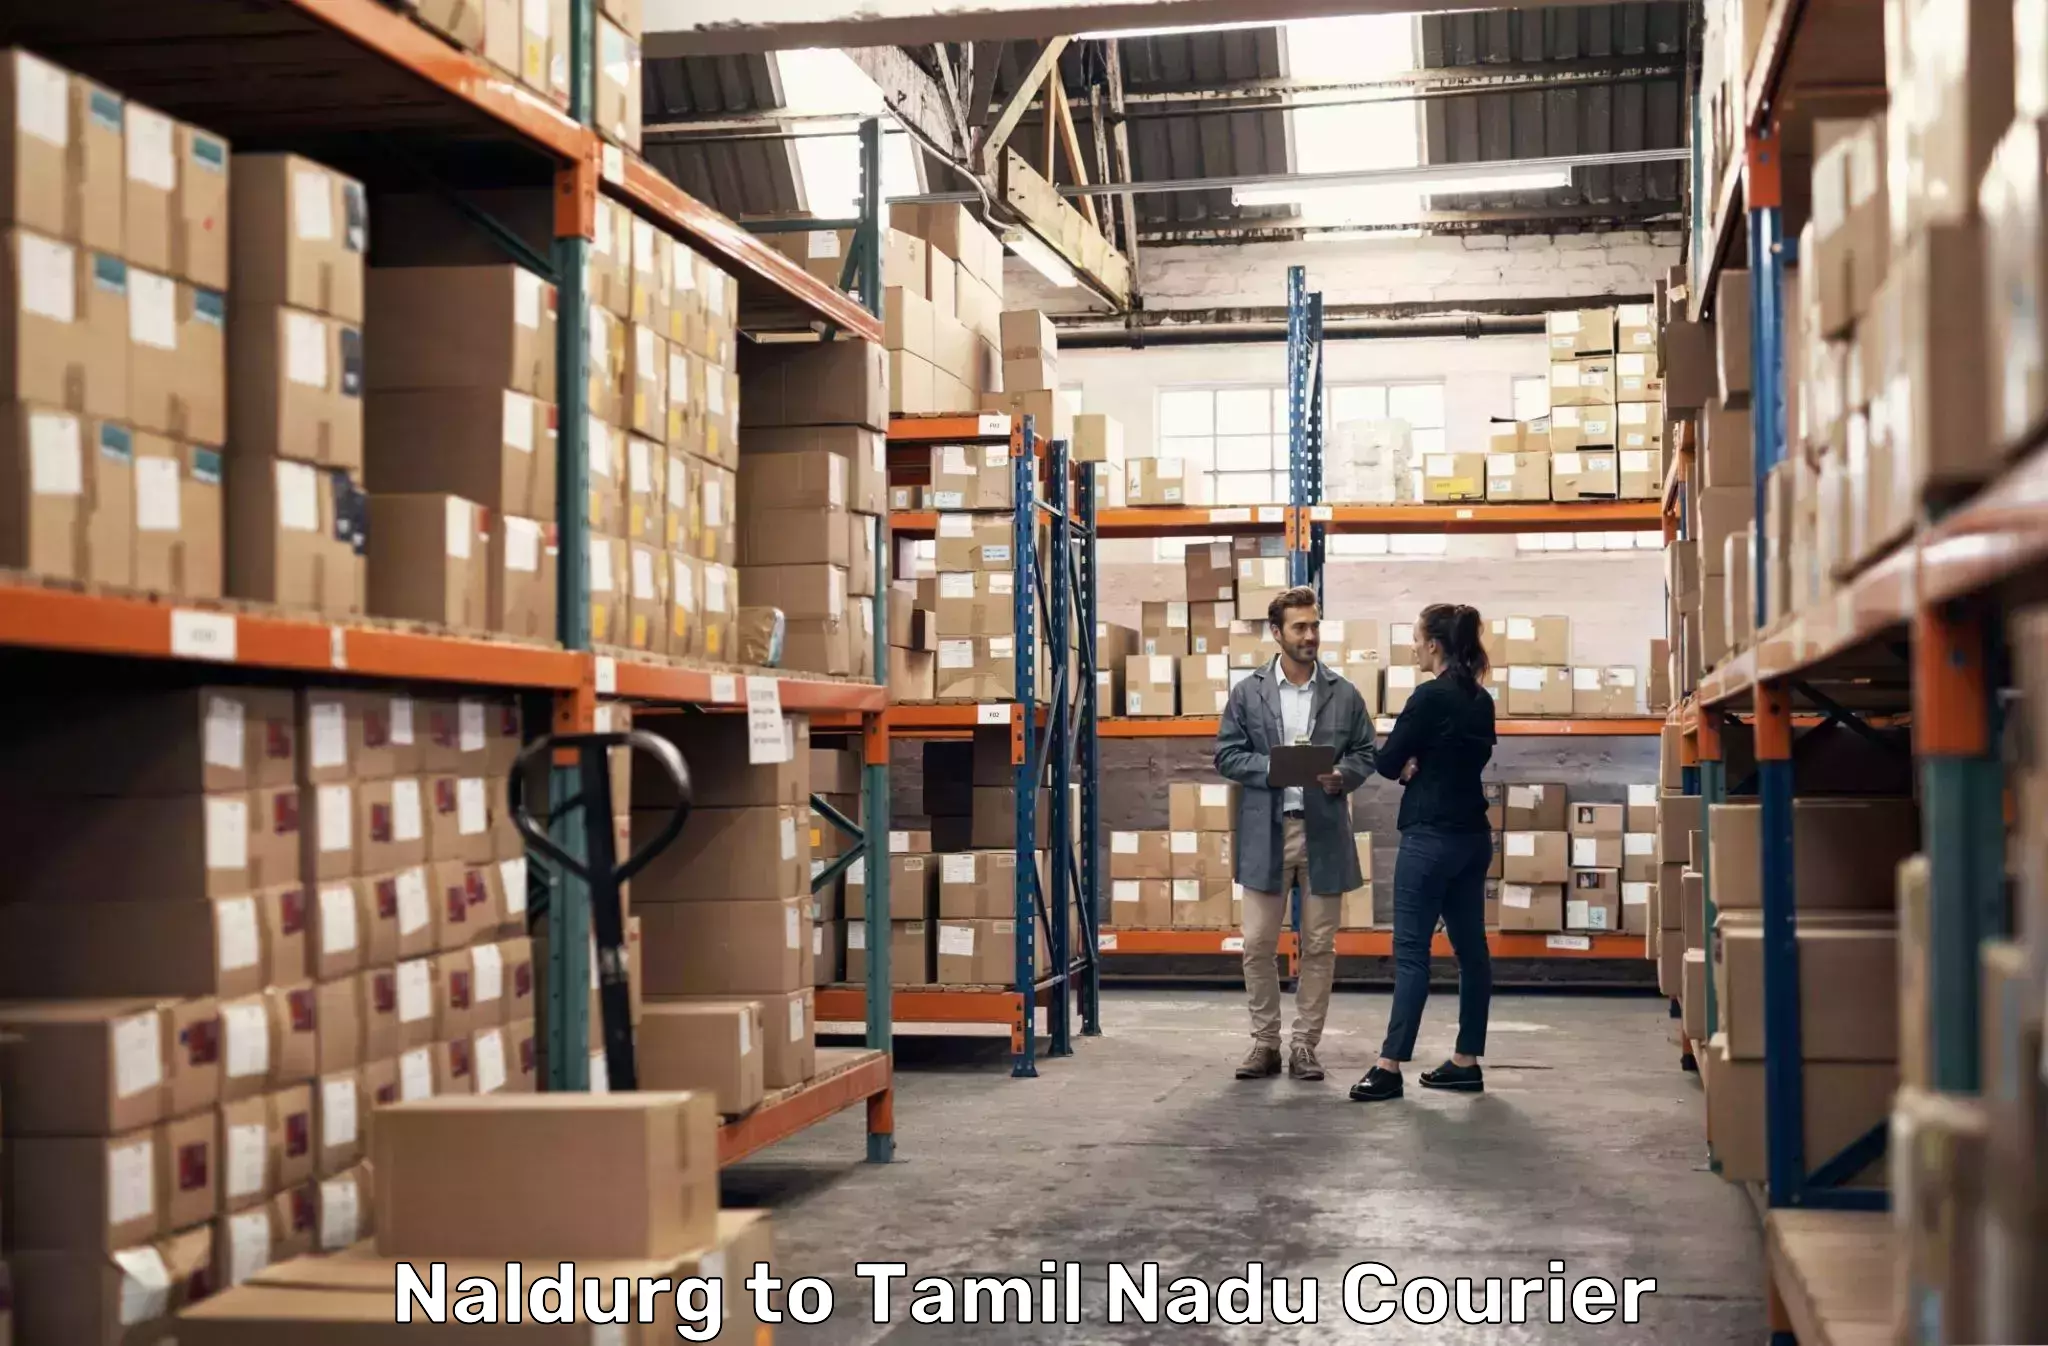 Speedy delivery service Naldurg to IIIT Tiruchirappalli